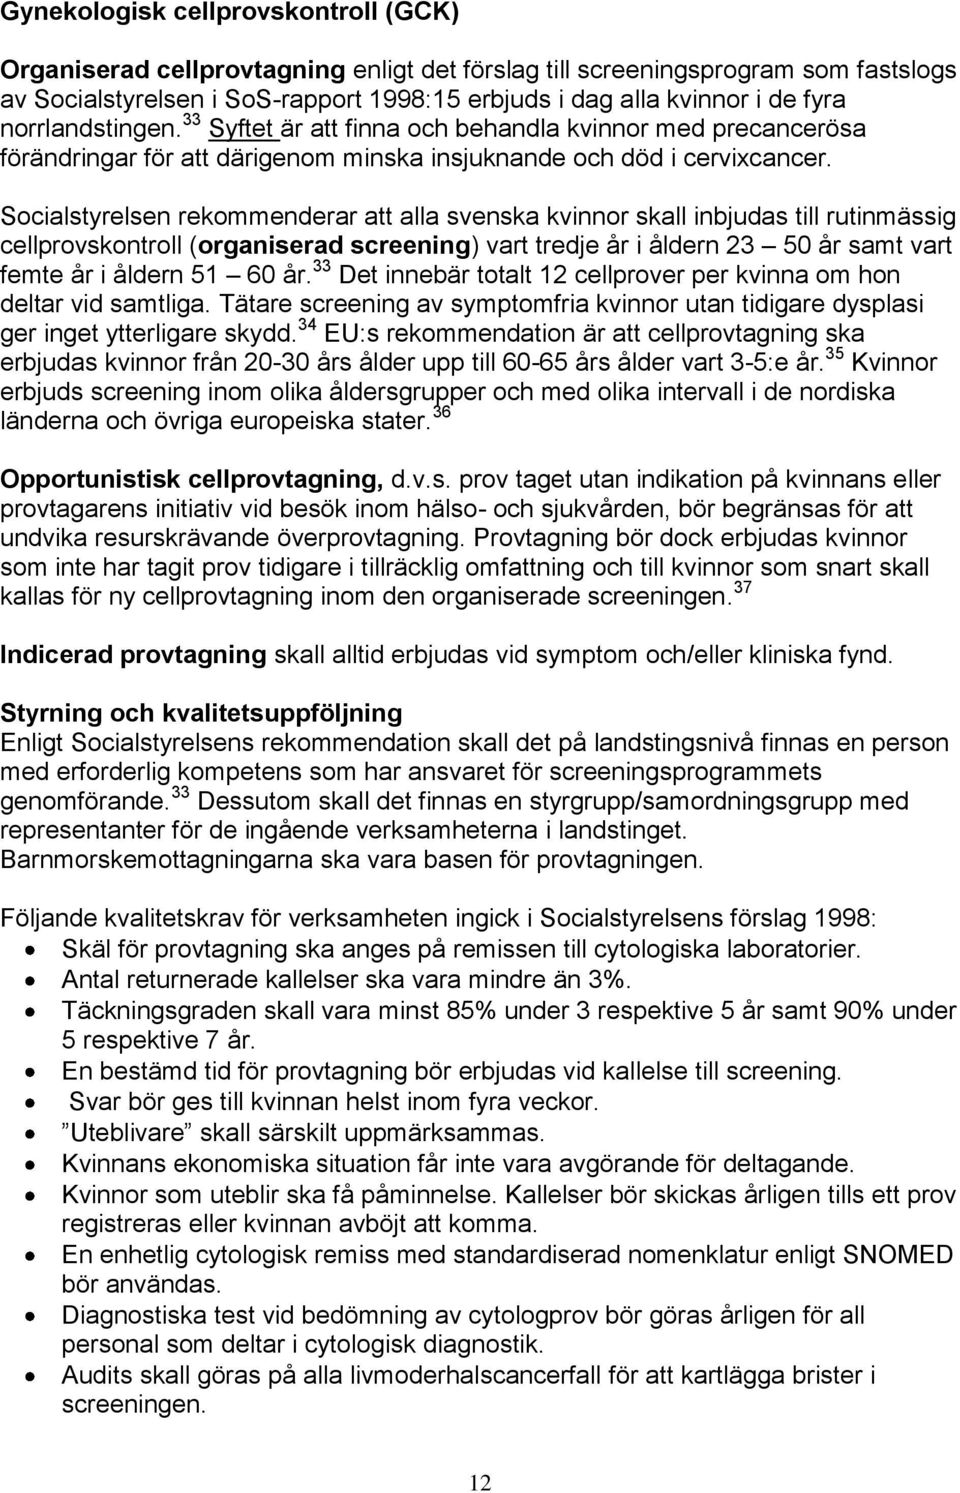 Socialstyrelsen rekommenderar att alla svenska kvinnor skall inbjudas till rutinmässig cellprovskontroll (organiserad screening) vart tredje år i åldern 23 50 år samt vart femte år i åldern 51 60 år.